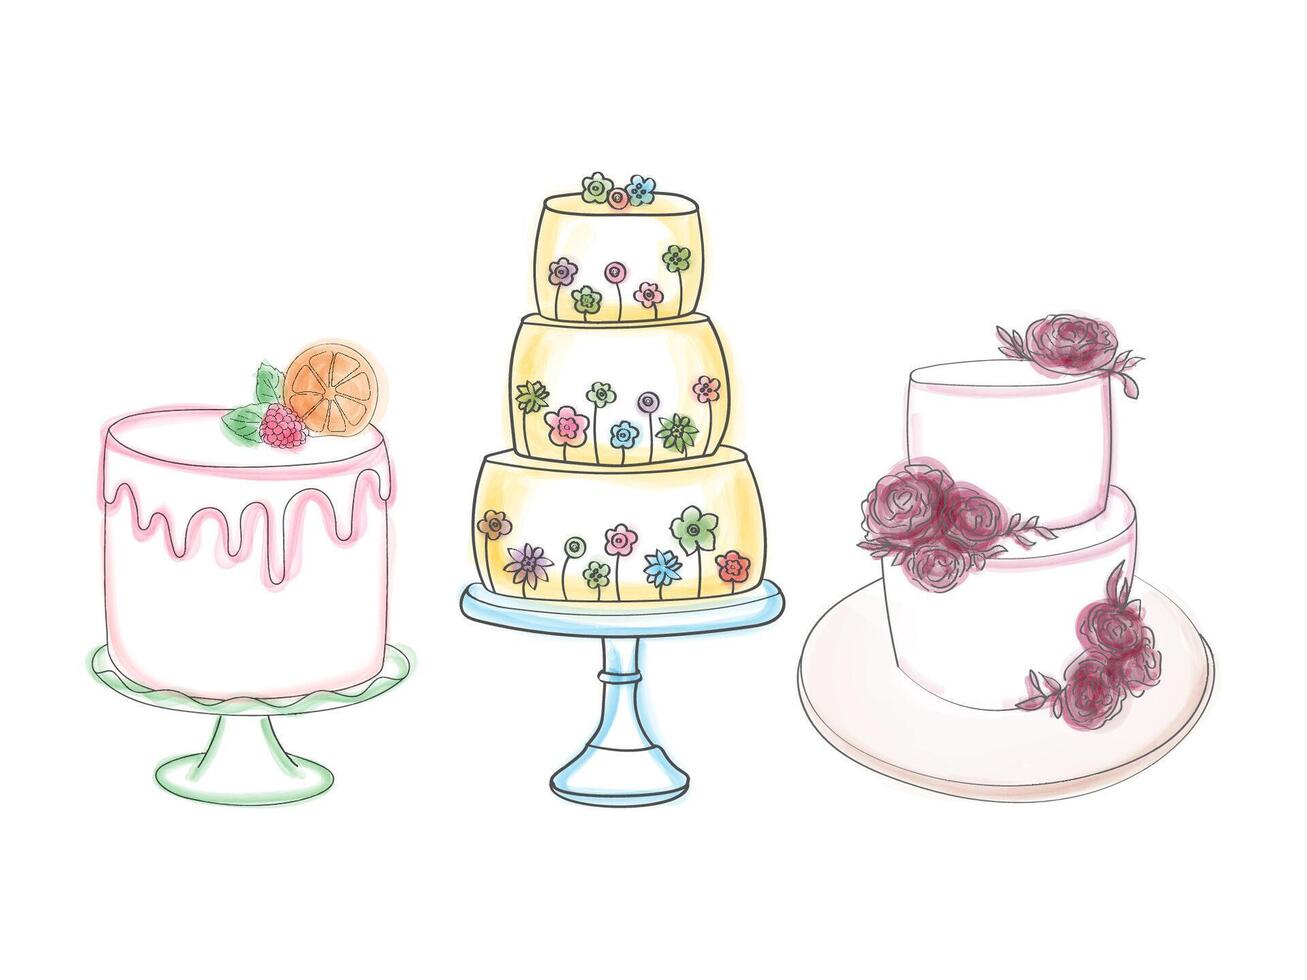 das Zeichnung zeigt drei deutlich Typen von Kuchen, präsentieren das Vielfalt im Design, Form, und Dekorationen. jeder Kuchen ist einzigartig vorgeführt, Hervorheben ihr Unterschiede im Stil und Geschmack vektor